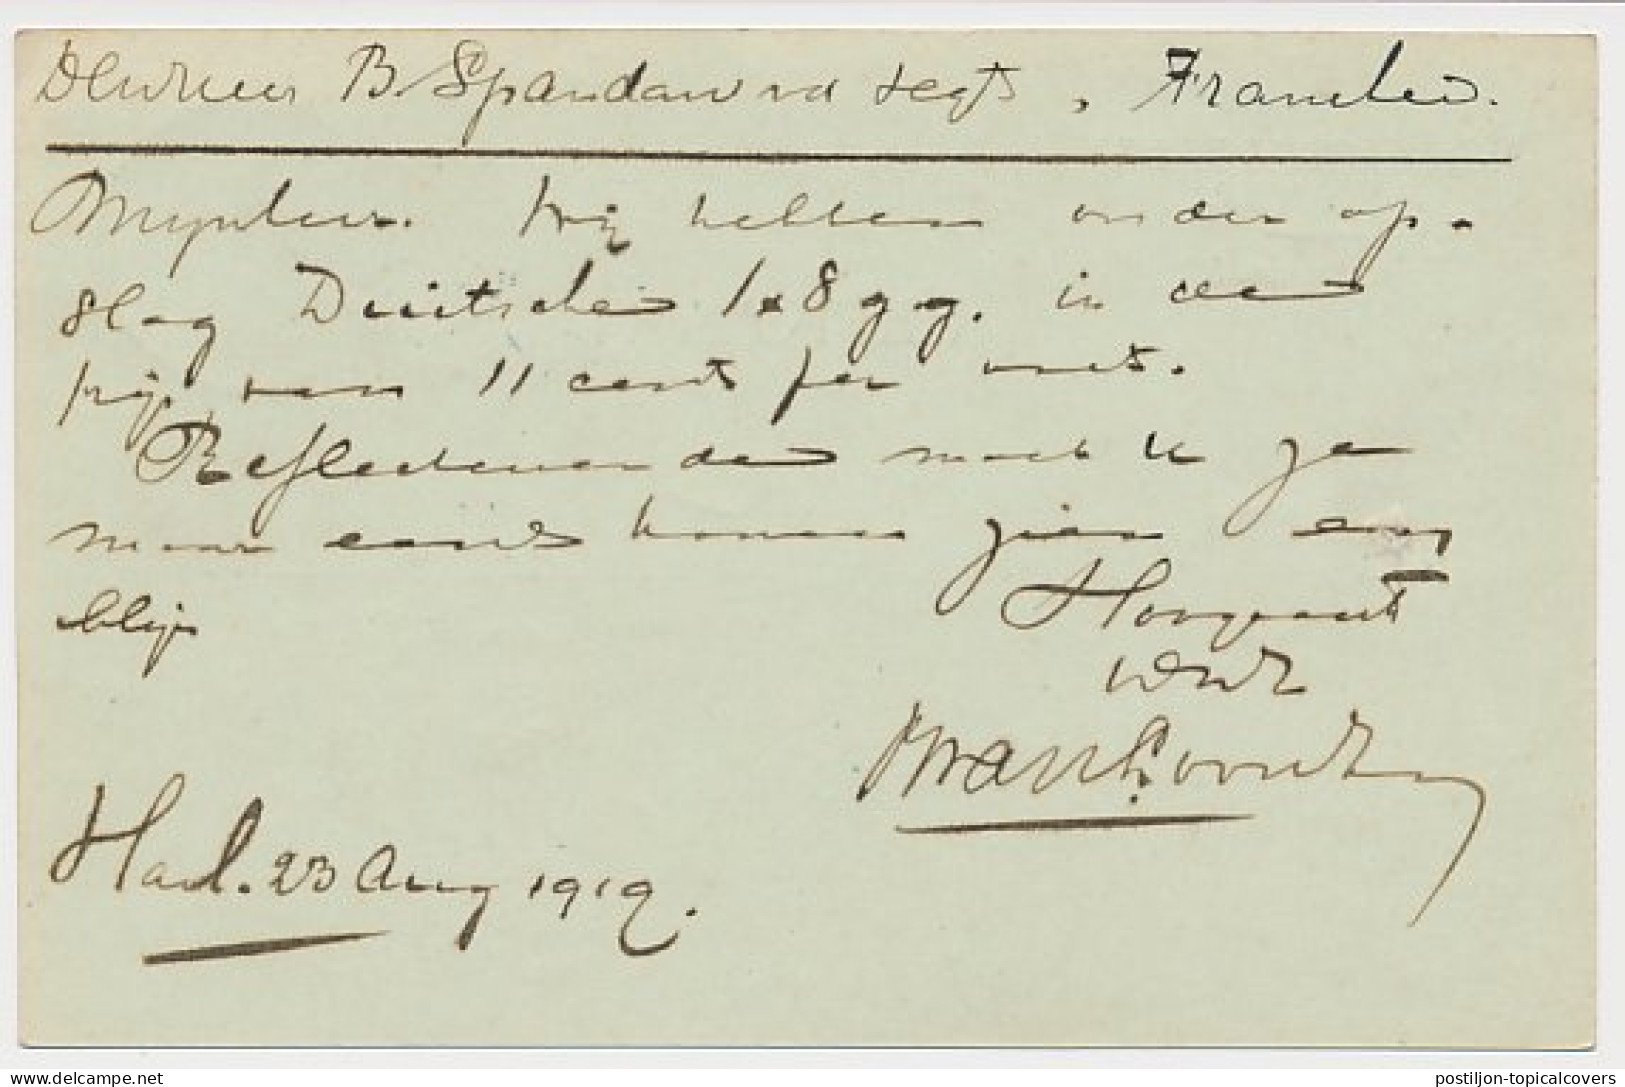 Firma Briefkaart Harlingen 1919 - B. Van Loon En Zoon - Zonder Classificatie